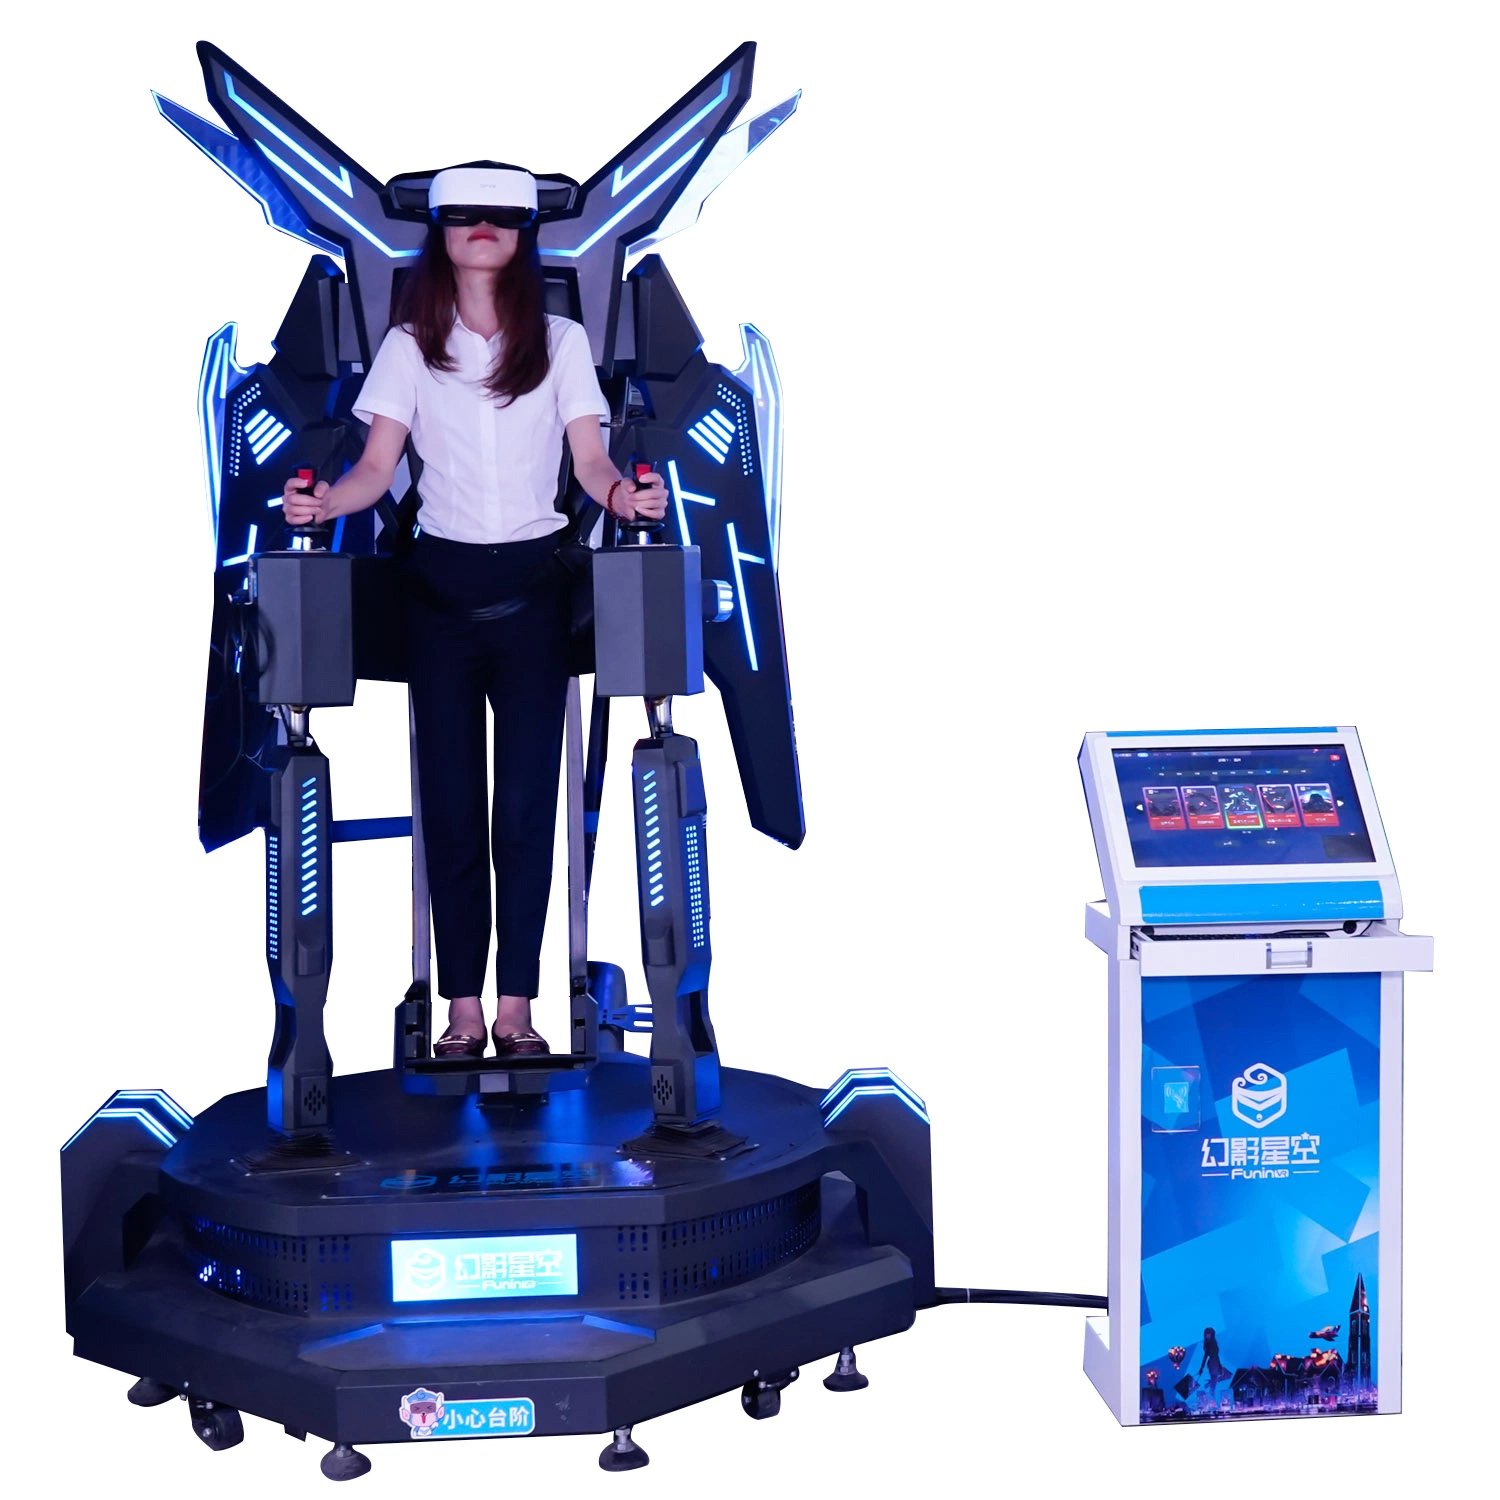 Заместитель председателя движения машины виртуальной реальности 9d-Vr небо полет симулятор крытый парк развлечений